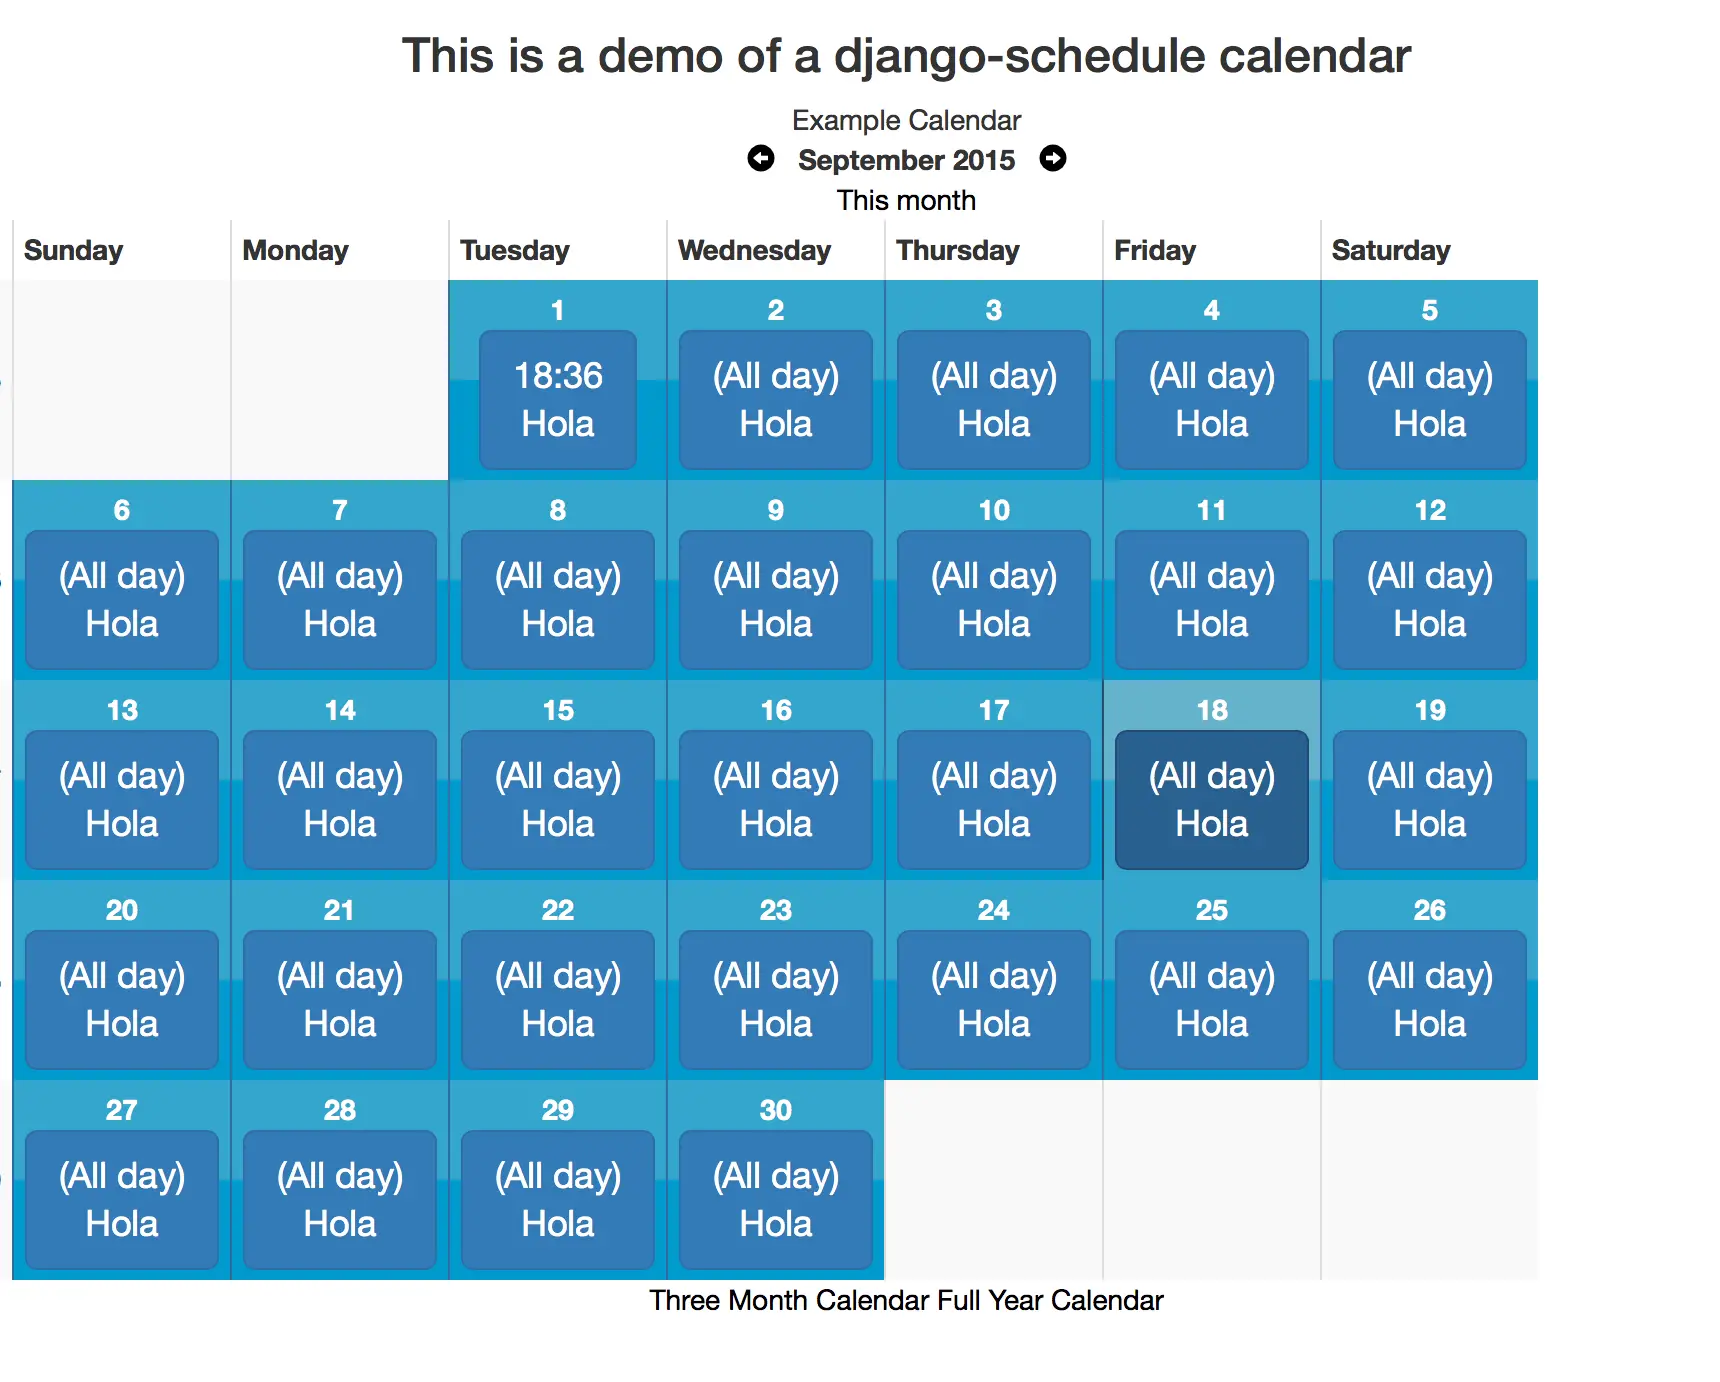 Calendar and Schedule App in Django Free Source code - Monthly View